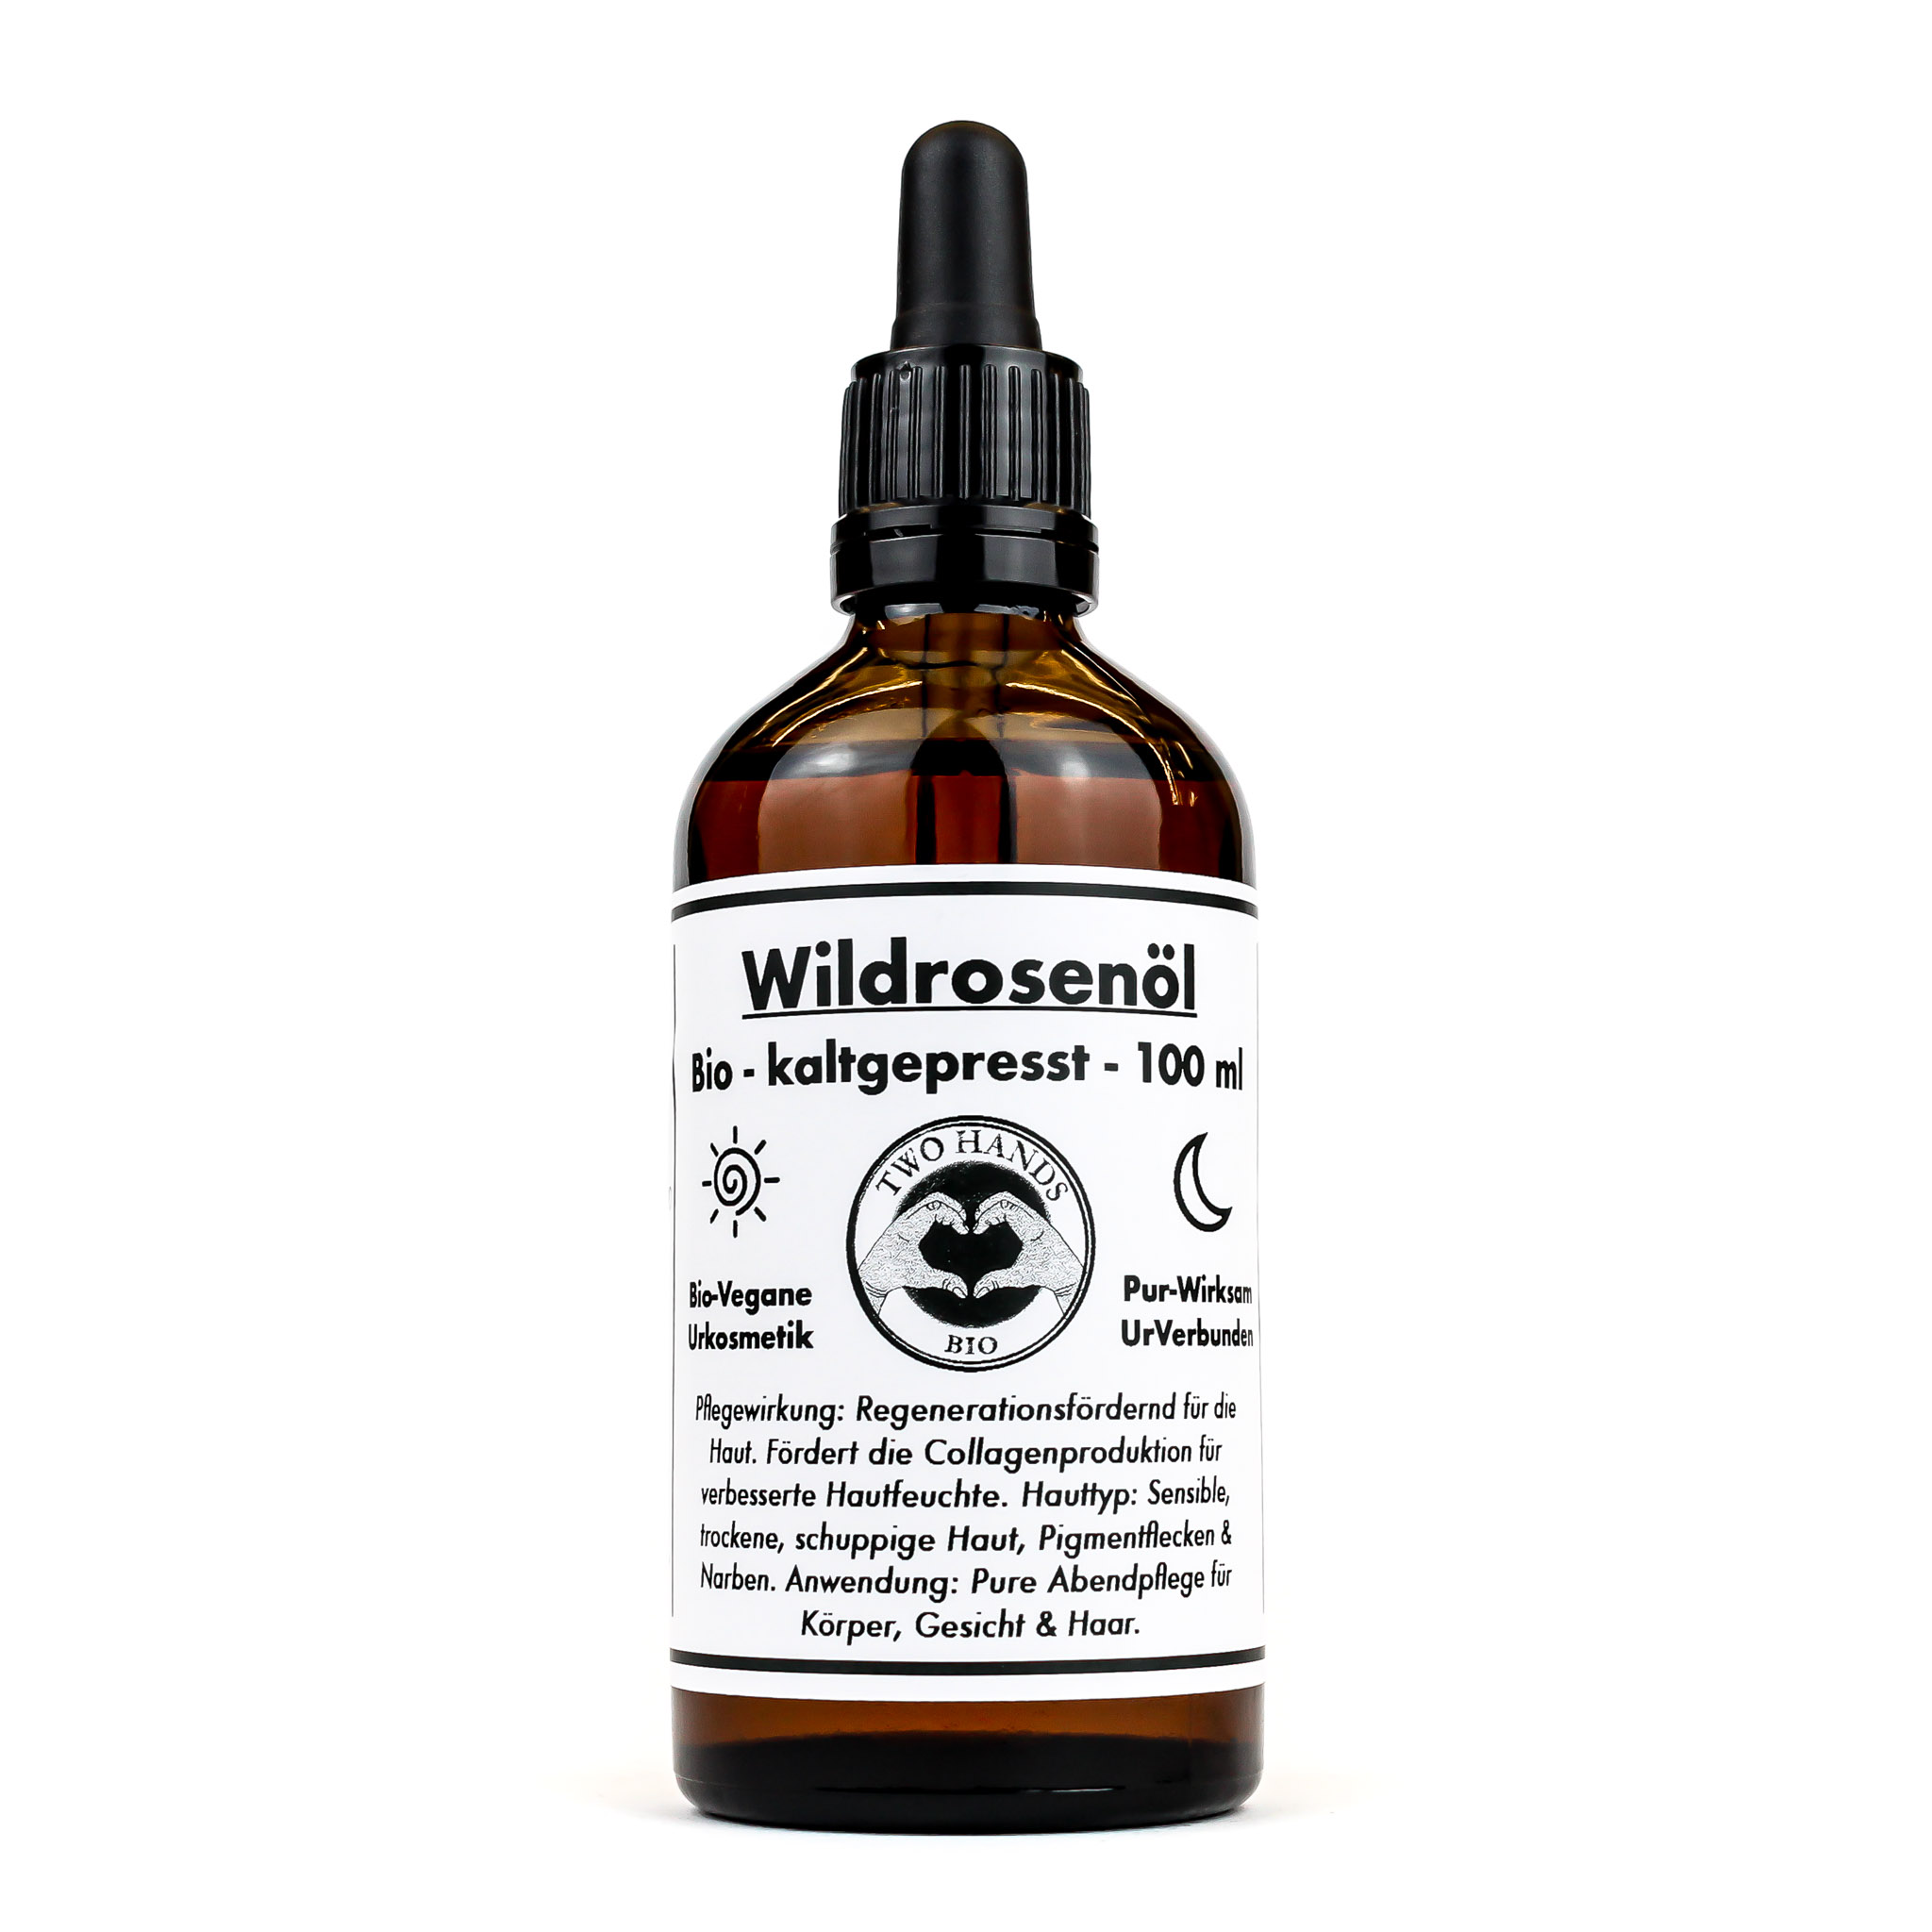 Wildrosenöl - Bio - Vegan - Kaltgepresst - Hagebuttenkernöl - 100 ml